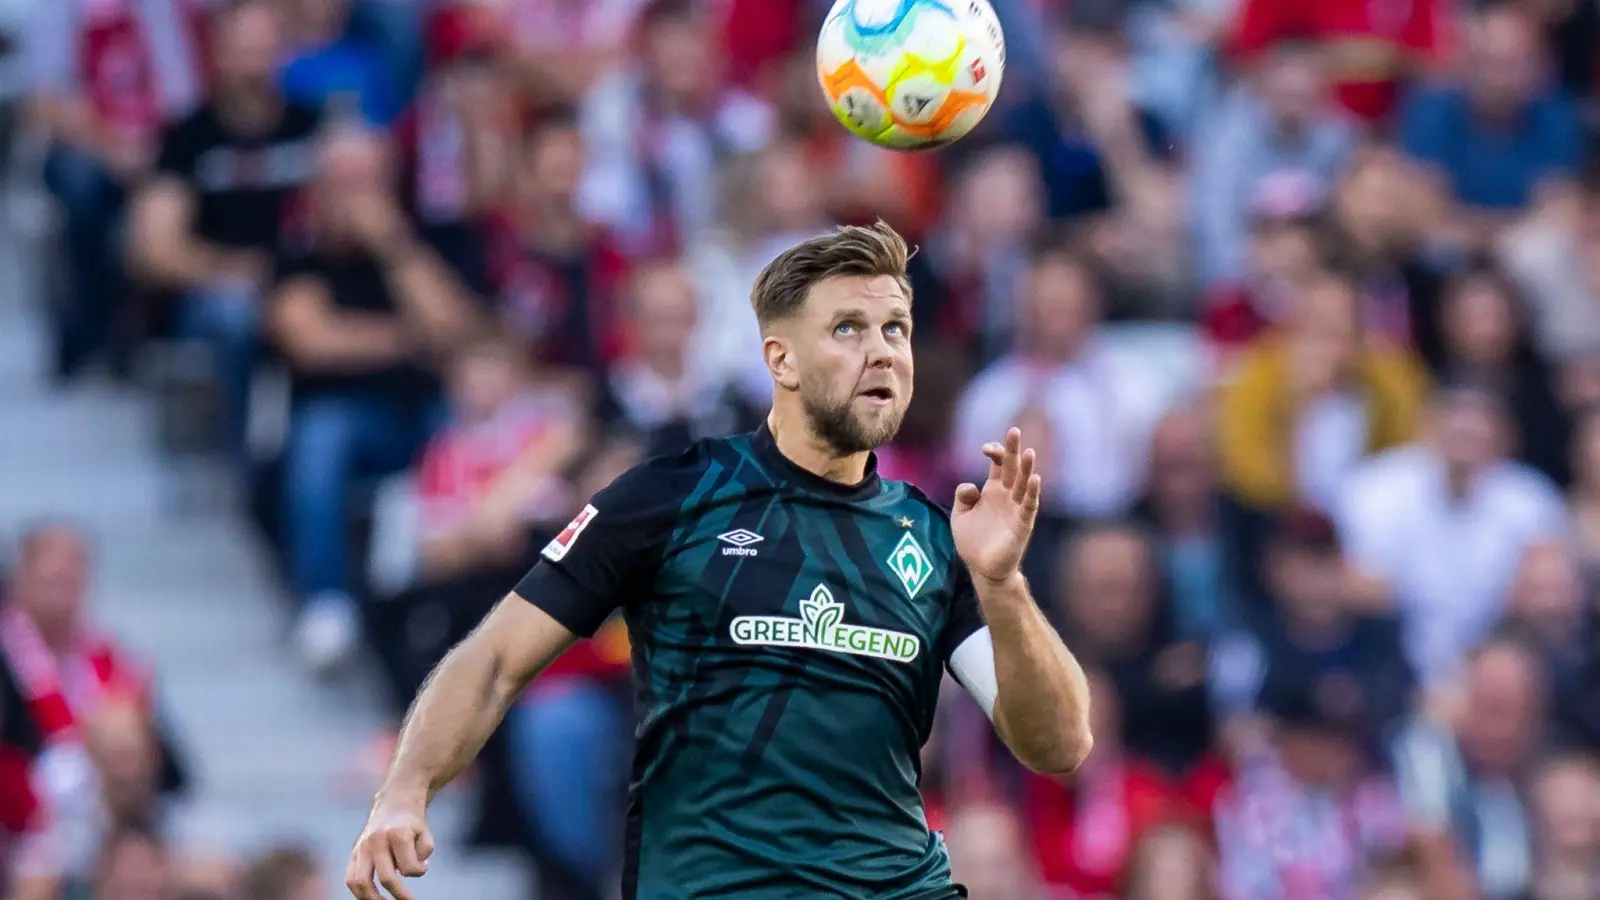 Fällt für das Spiel gegen Bayern München aus: Werder Bremens Niclas Füllkrug in Aktion. (Foto: Tom Weller/Deutsche Presse-Agentur GmbH/dpa)